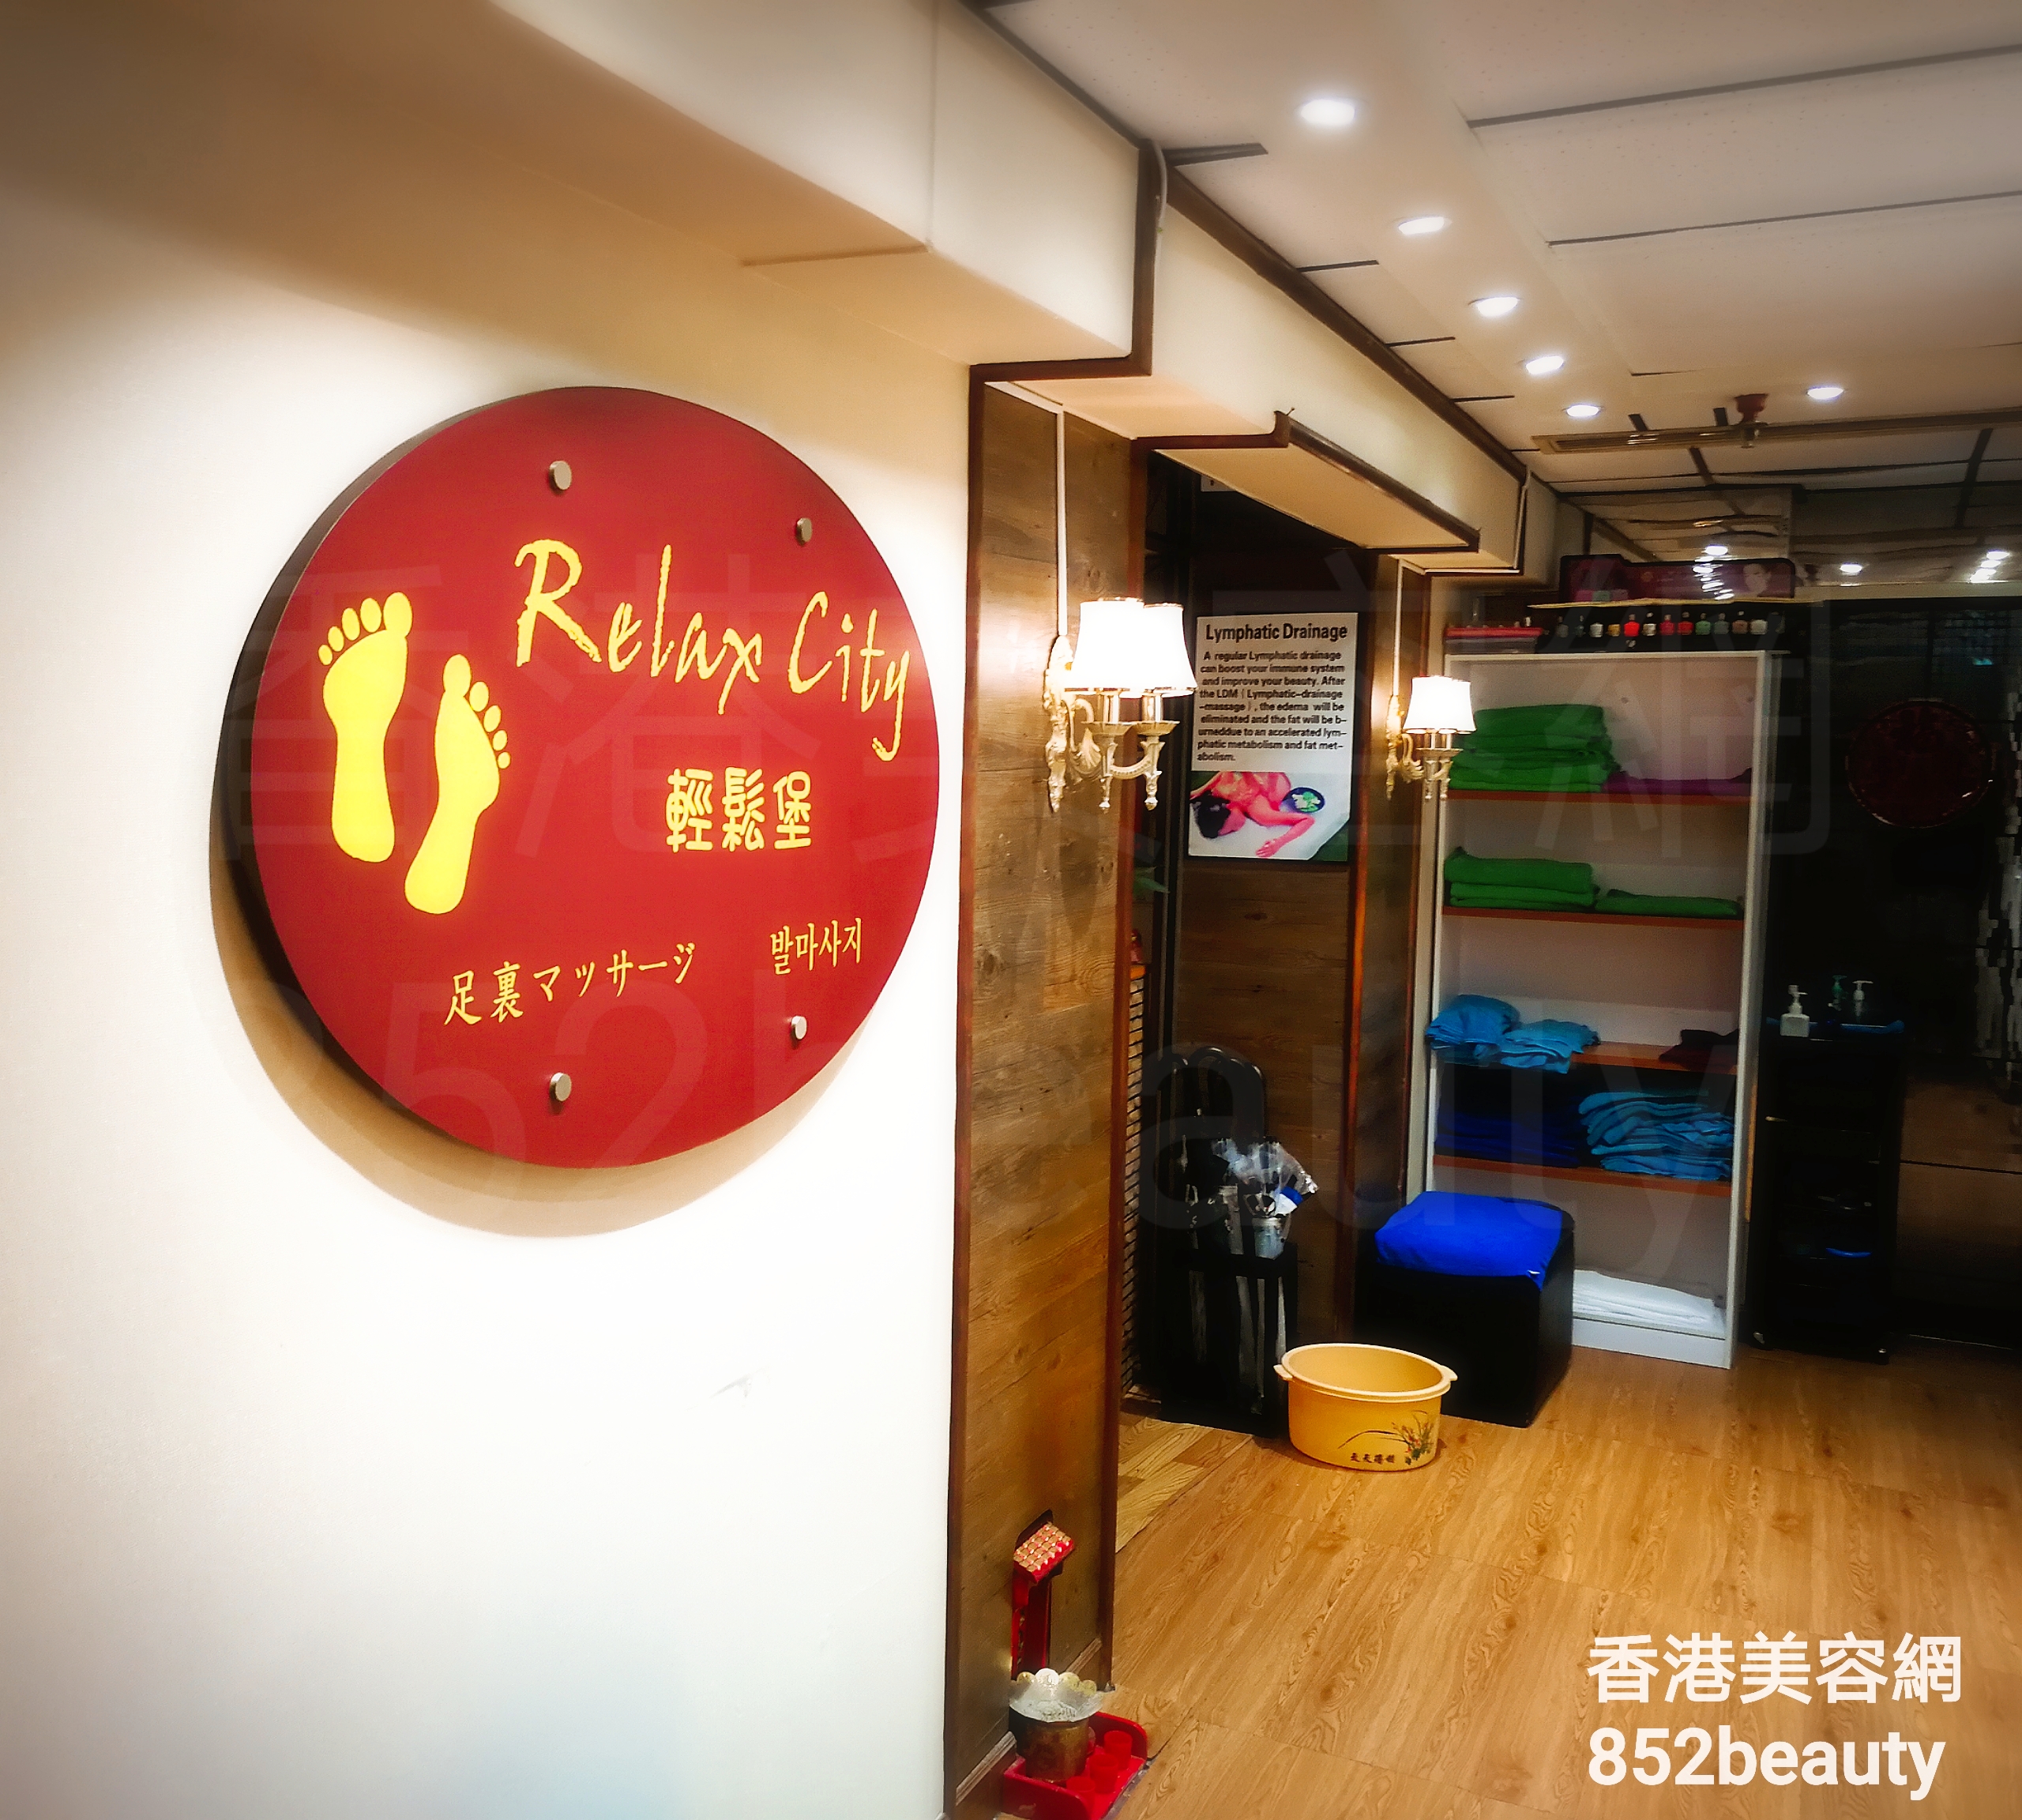 香港美容網 Hong Kong Beauty Salon 美容院 / 美容師: Relax City